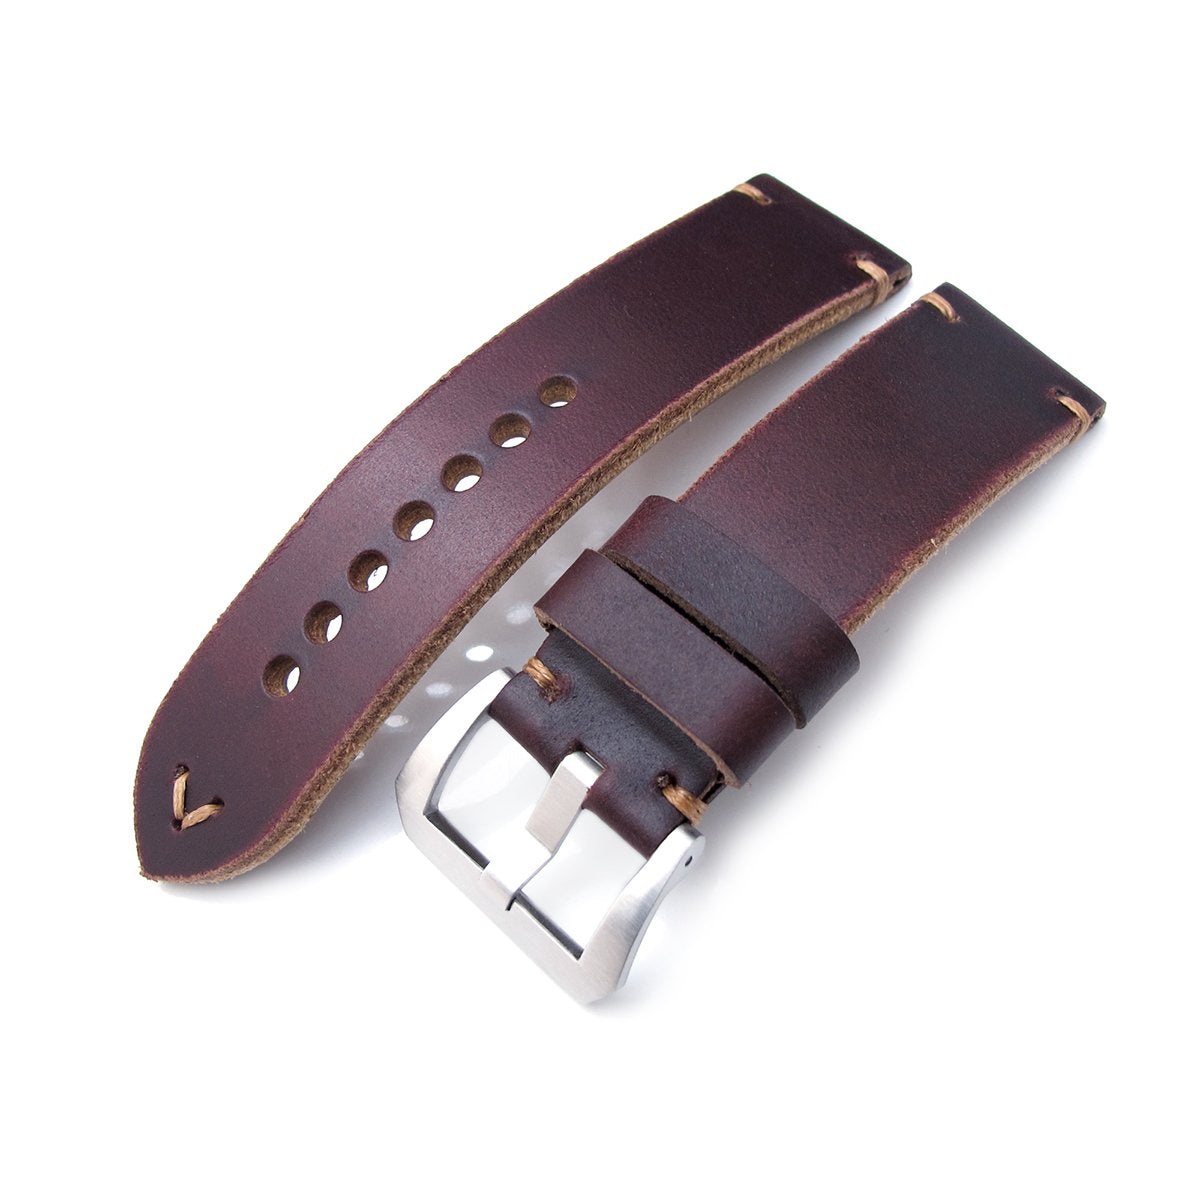 24mm MiLTAT Horween Chromexcel Watch Strap Burgundy Brown Brown Stitching Strapcode Watch Bands